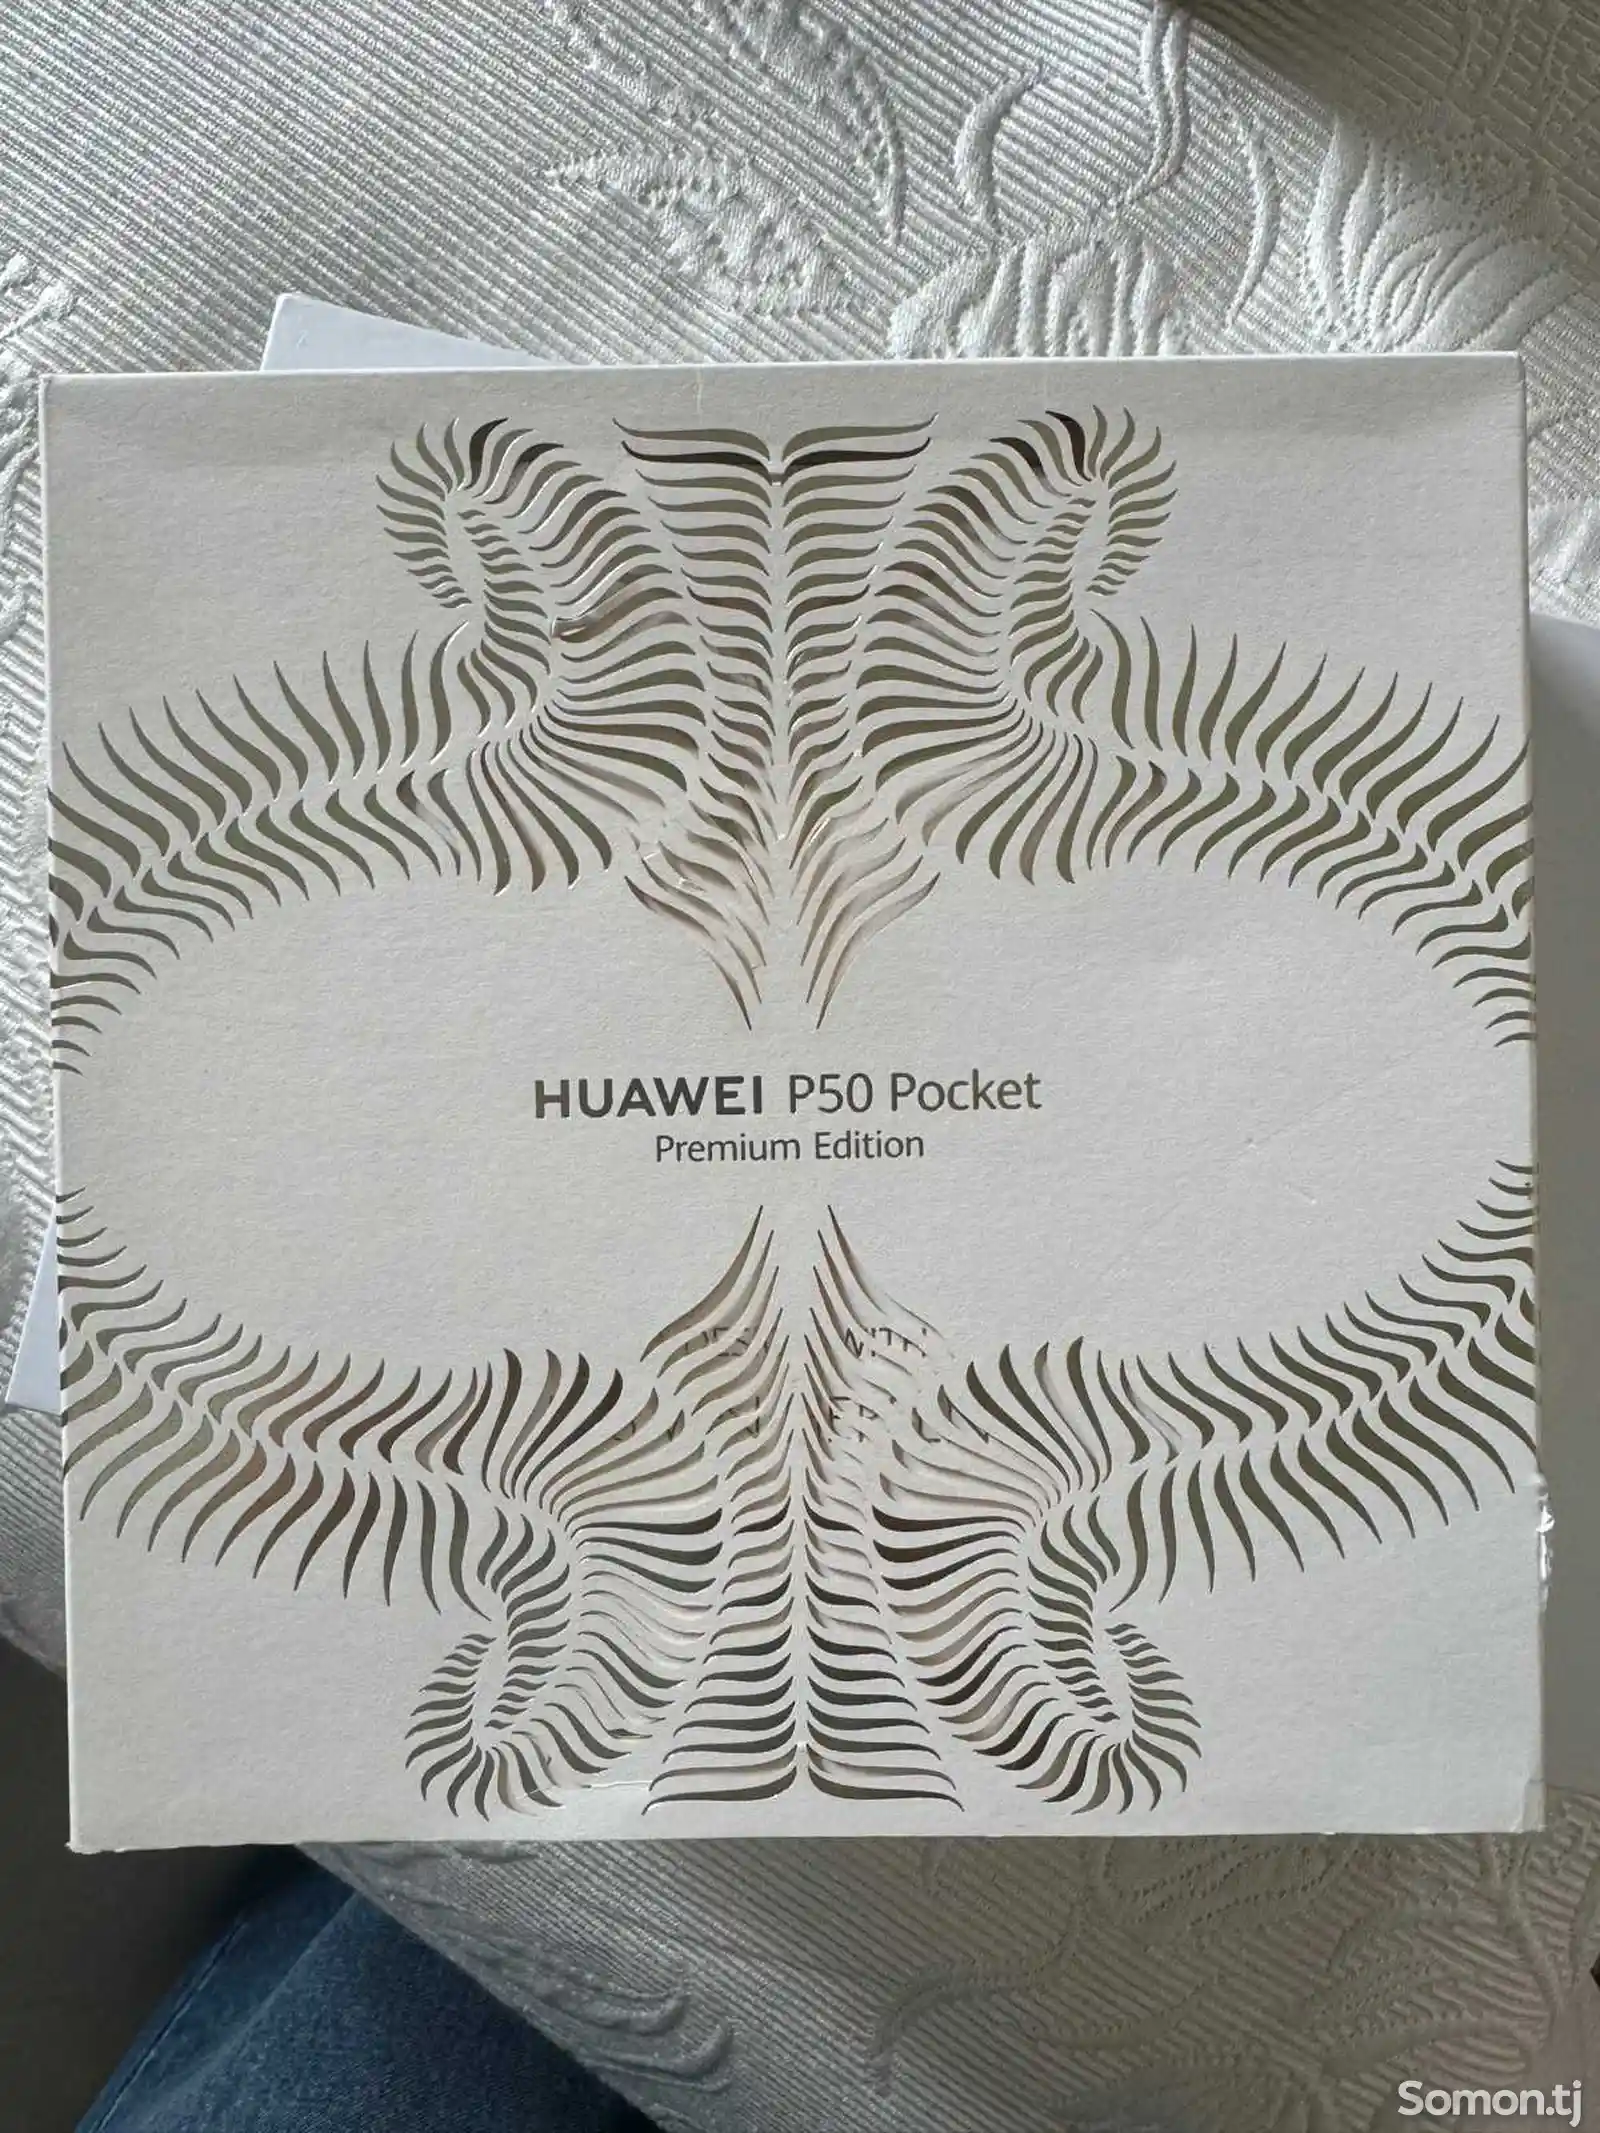 Huawei p50 pocket-4